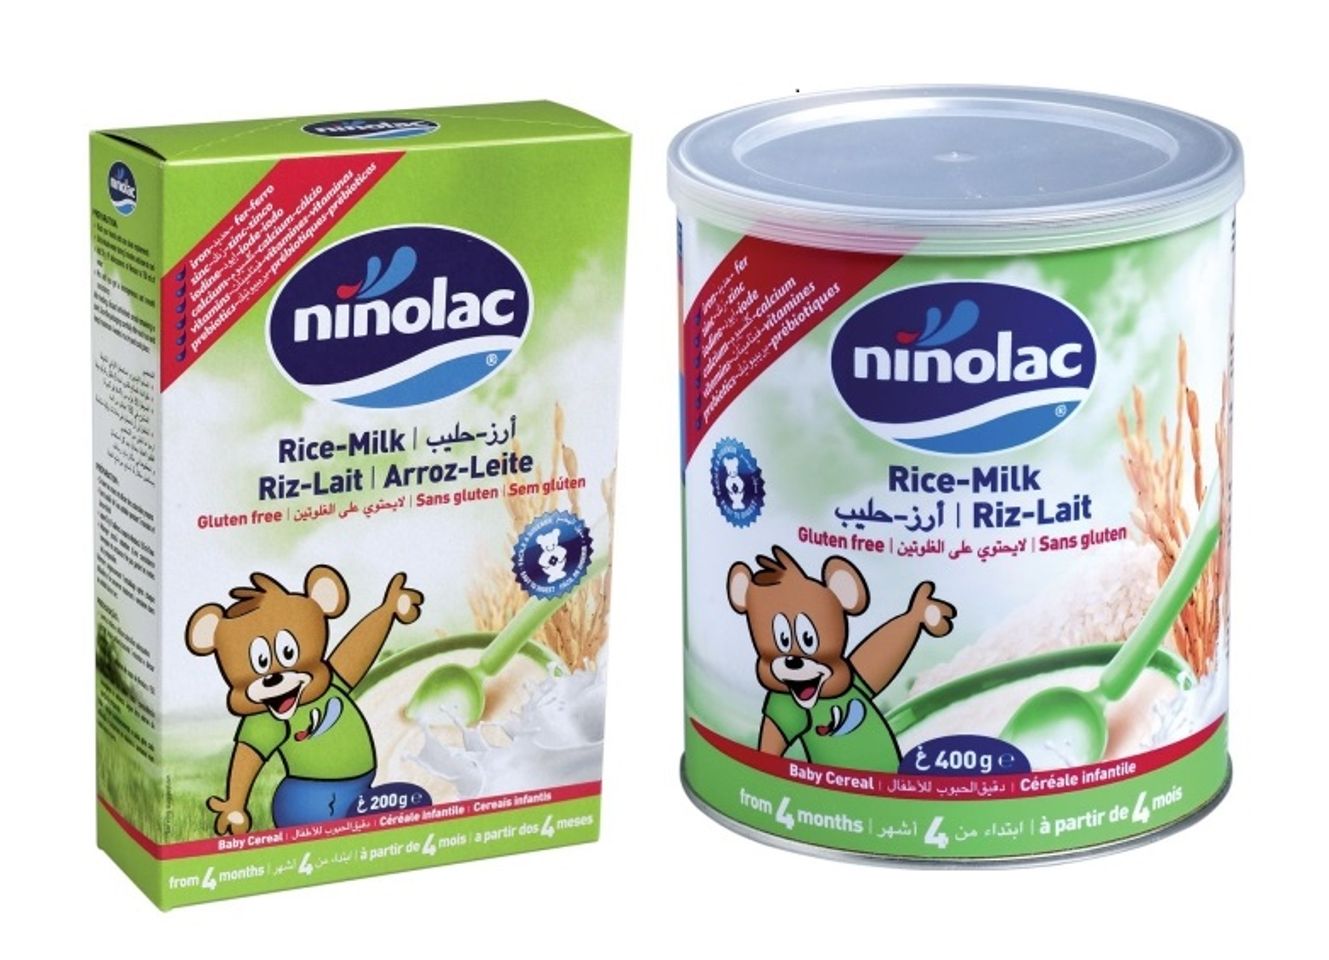 Bột ăn dặm Ninolac cho trẻ trên 4 tháng tuổi 1